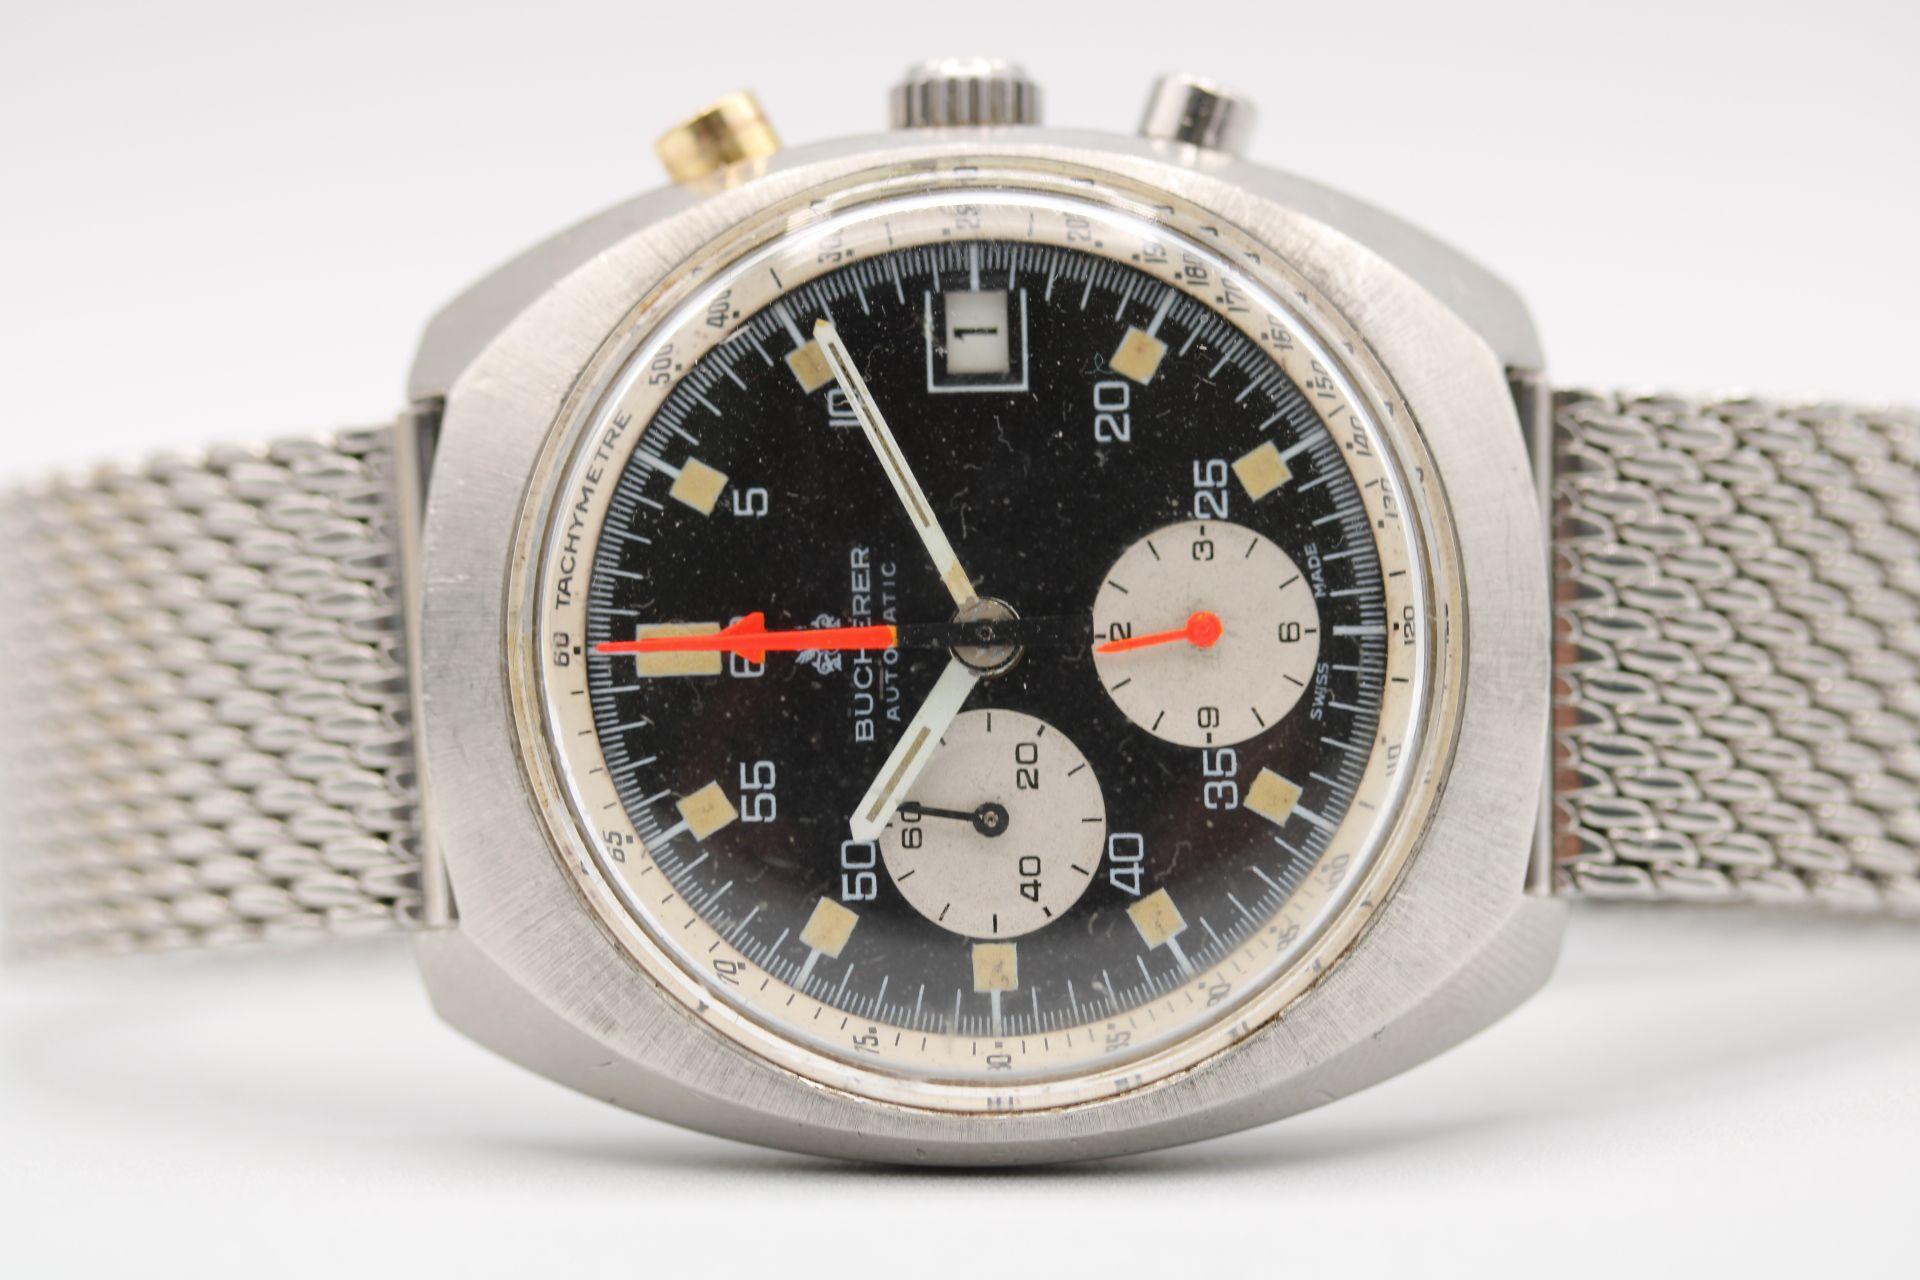 et ein weiteres Vintage-Schmuckstück, das wir gefunden haben. Wir freuen uns, Ihnen diese Carl F Bucherer 1340 Lemania Chronograph Armbanduhr anbieten zu können, die nur als Uhr geliefert wird, zusätzlich zu unserer 12-monatigen Garantie. 

Der